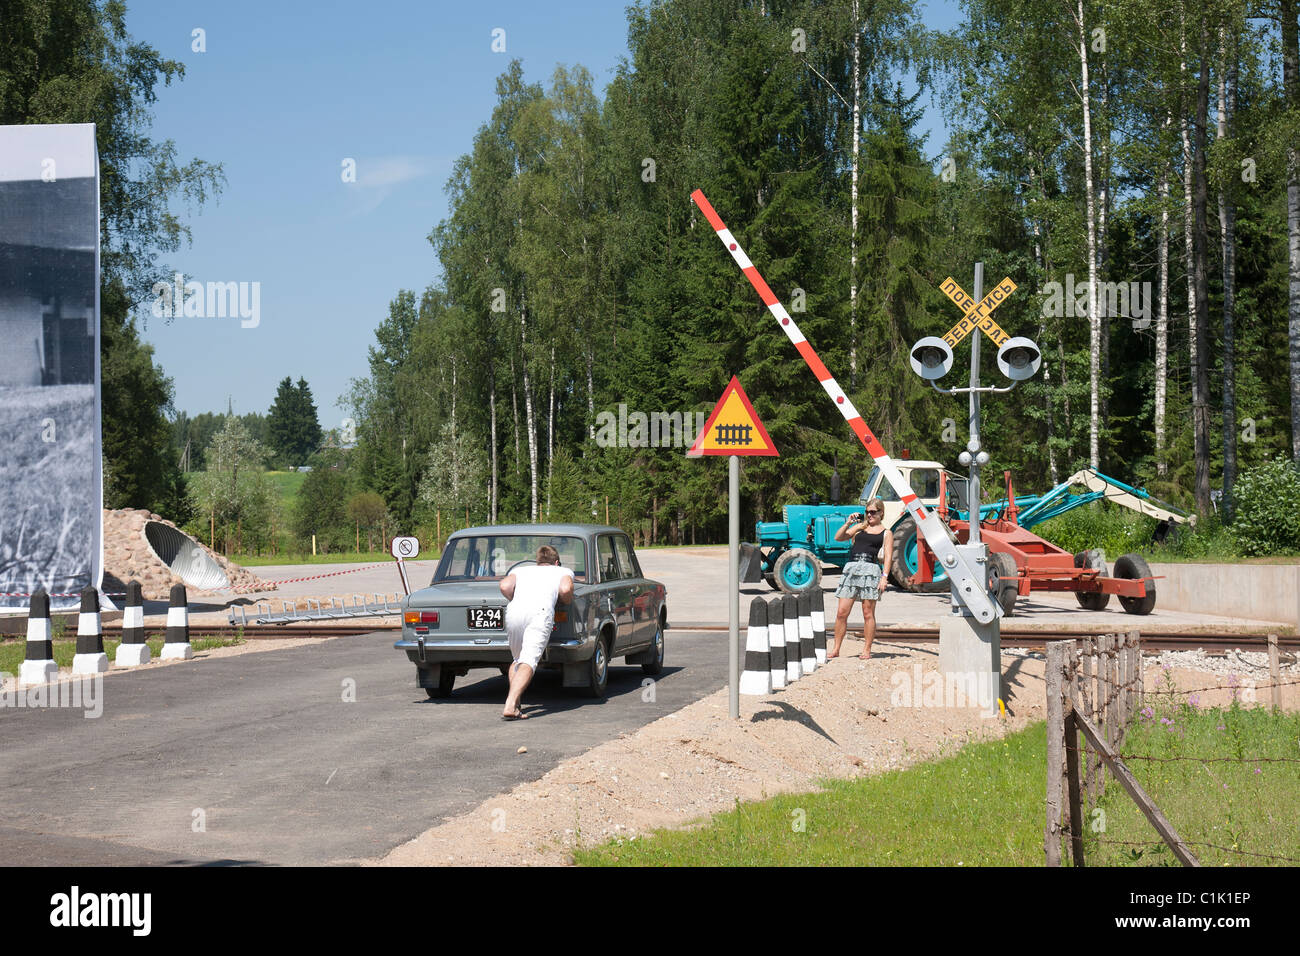 El cruce del ferrocarril, carretera, Museo Estonio Põlva Saverna, Condado, Estonia Foto de stock